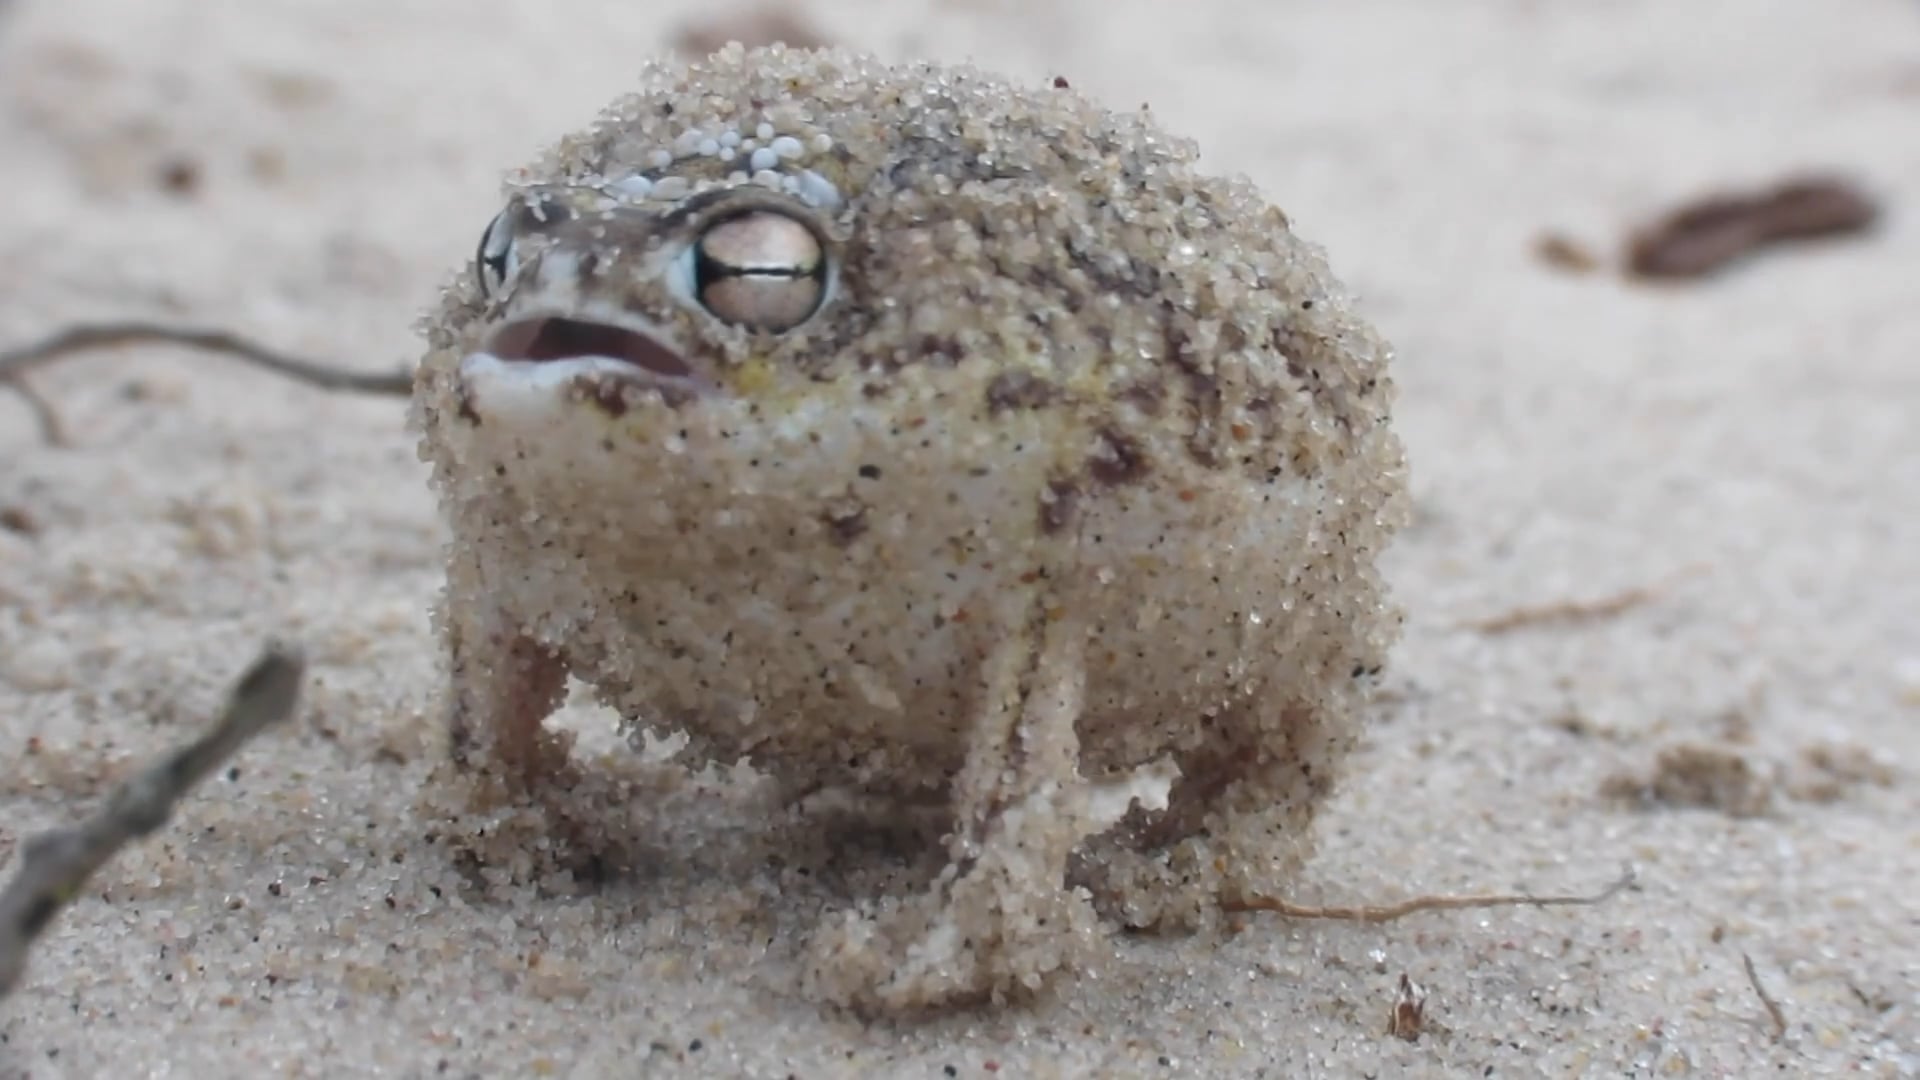 Desert frog